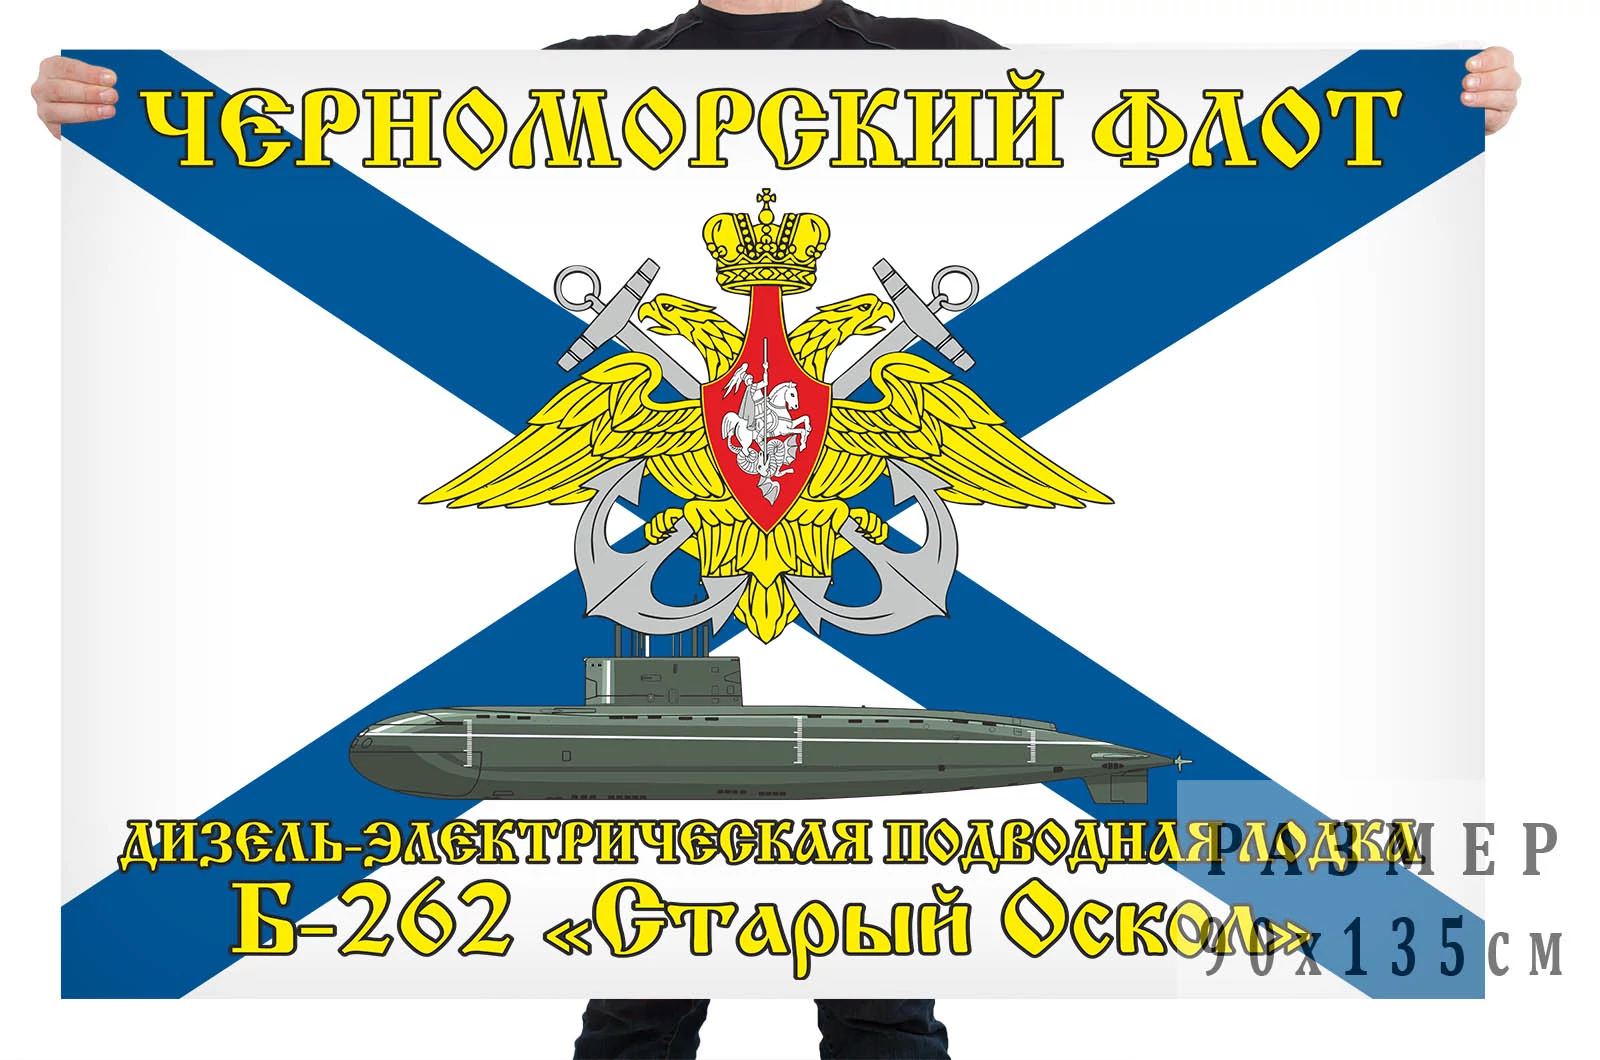 Флаг дизель-электрической подводной лодки Б-262 "Старый Оскол"